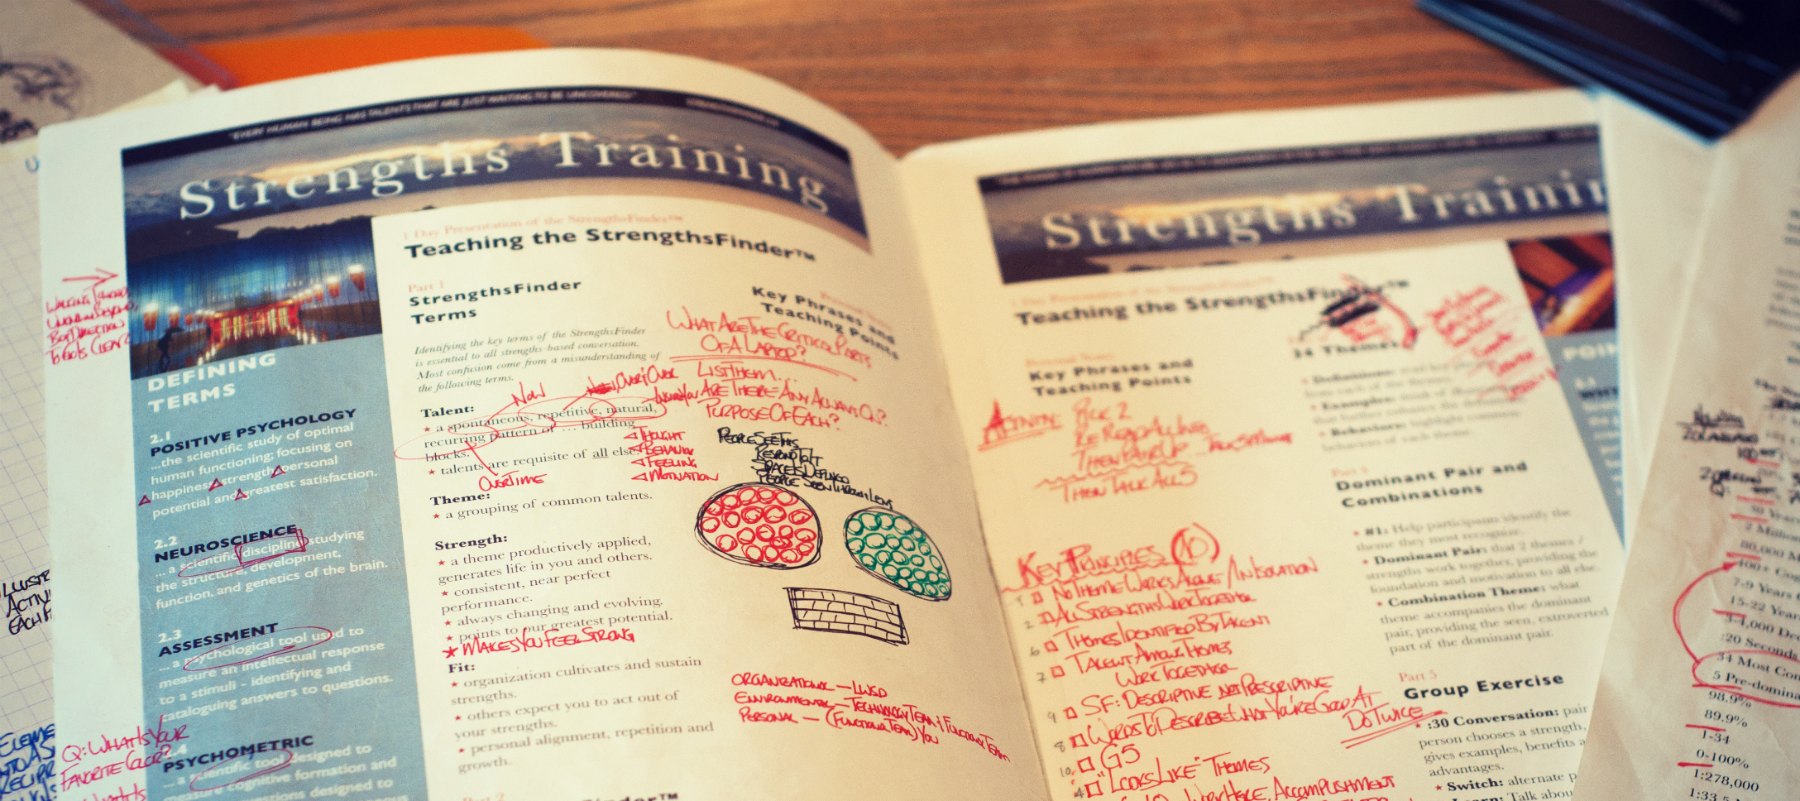 strengths training booklet full